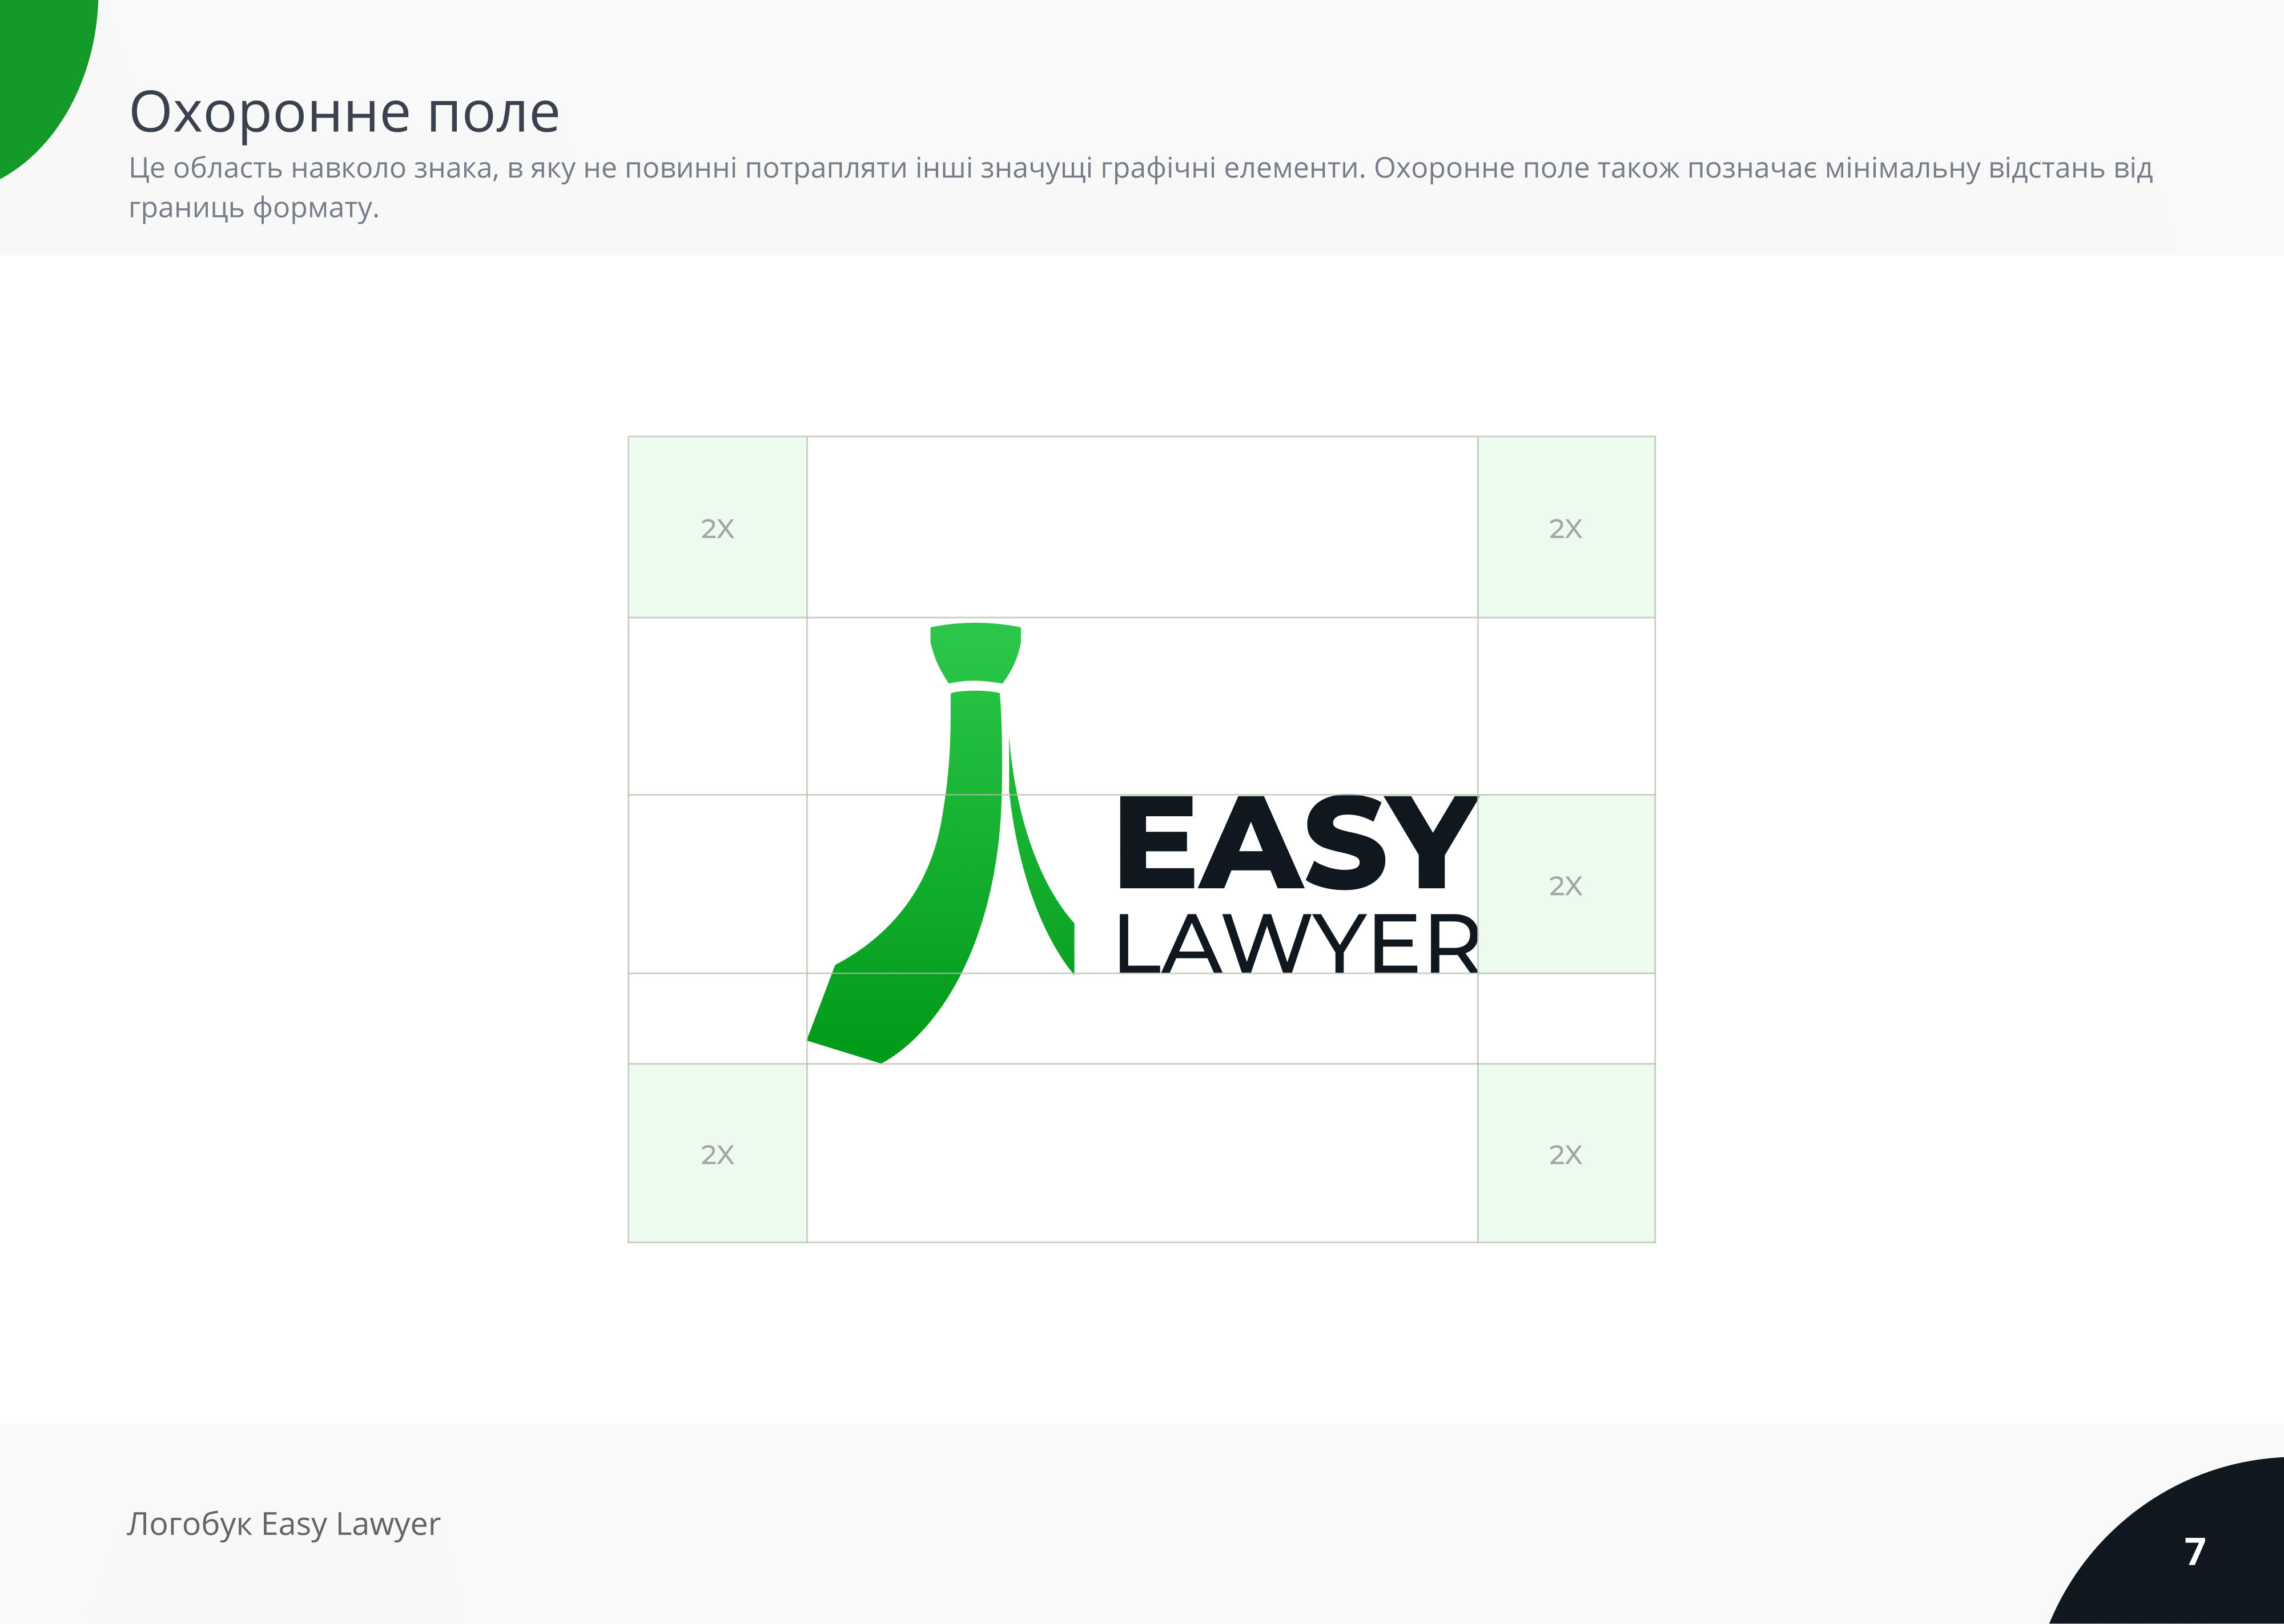 Easy Lawyer (Logobook)-07